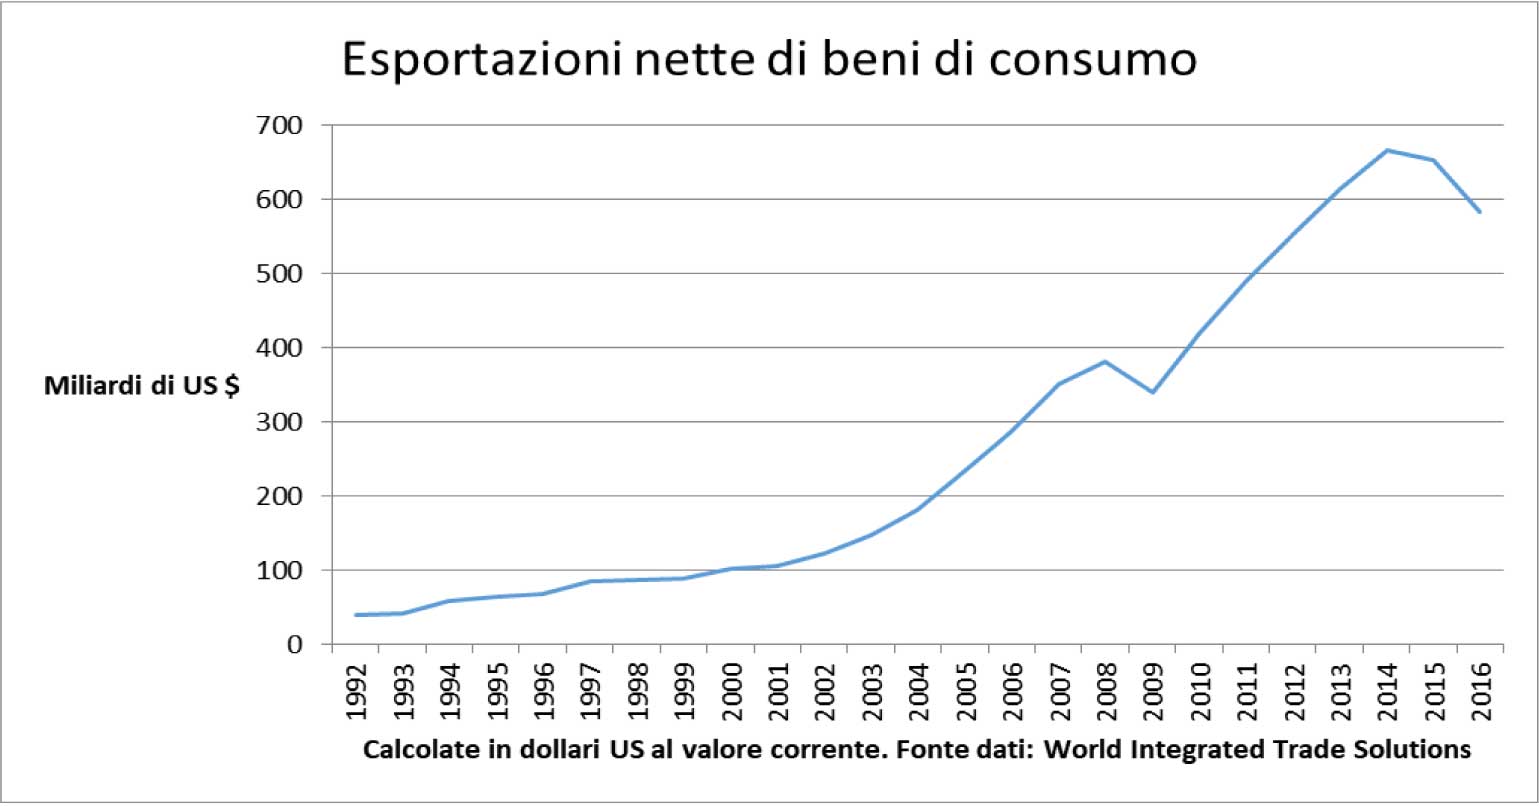 Esportazioni nette di beni di consumo